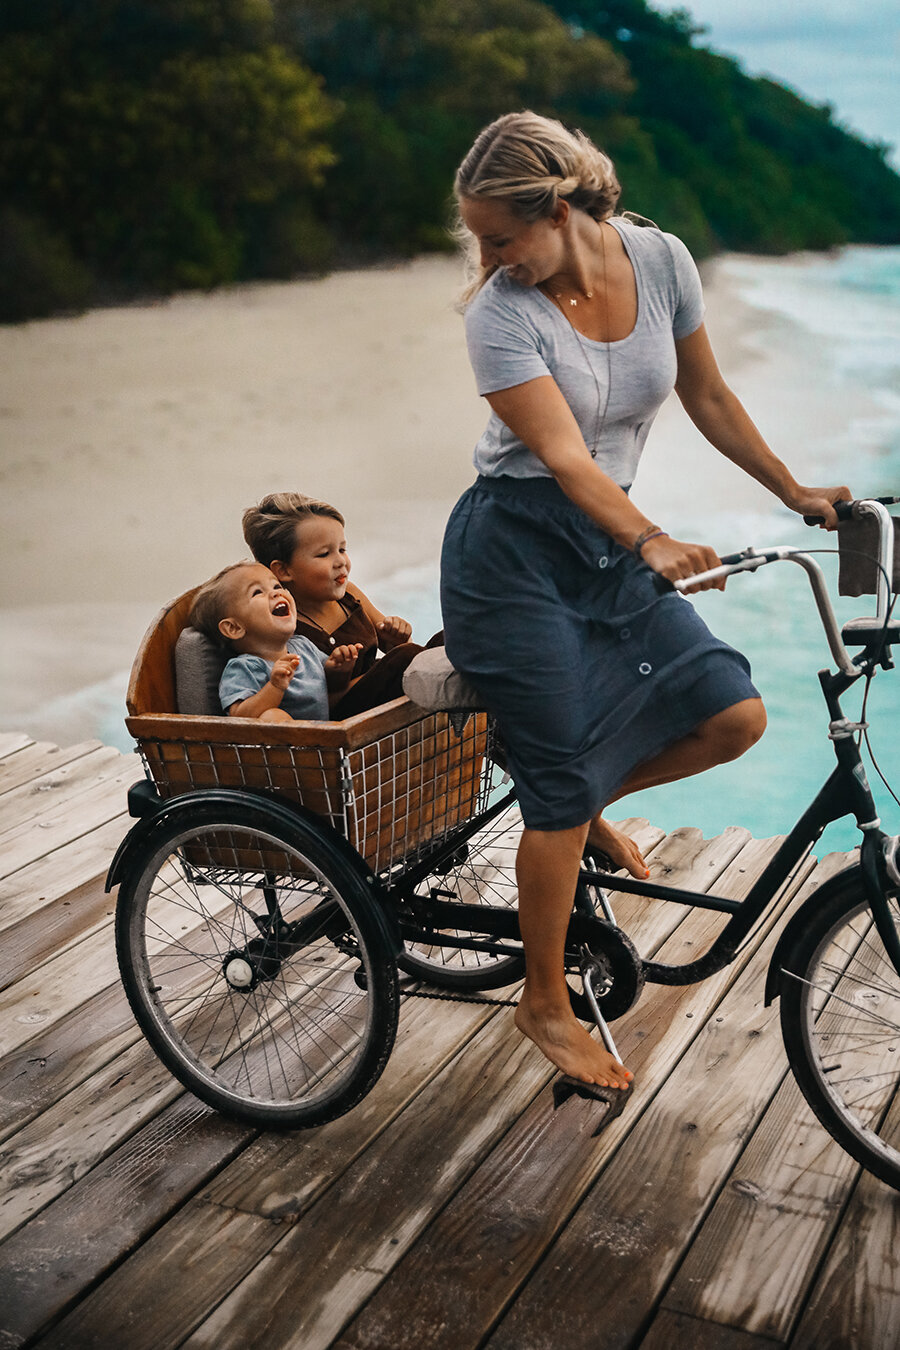 maldives-bicycles-2019-3-edit-2.jpg